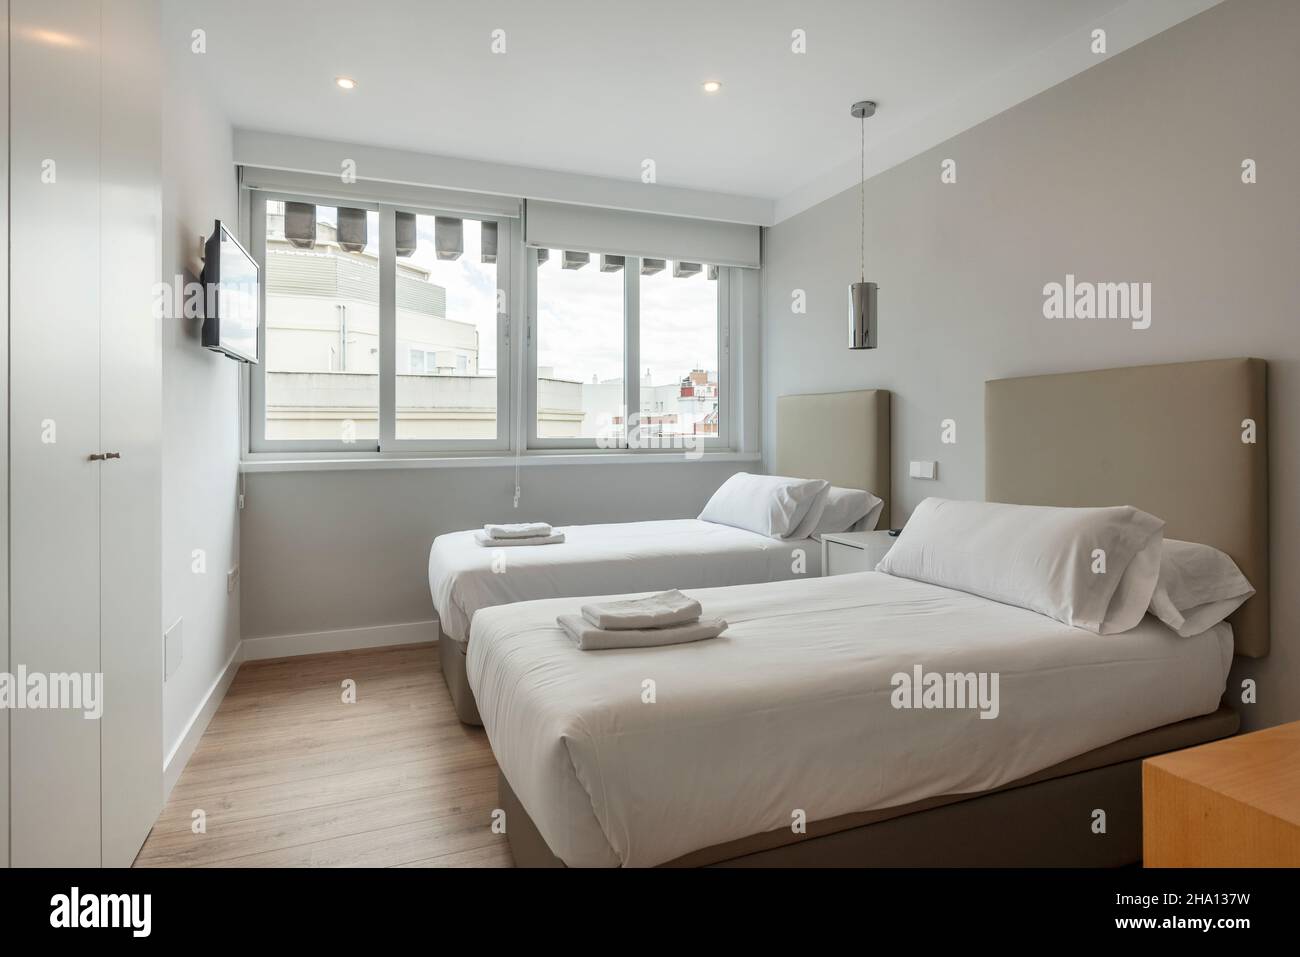 Schlafzimmer mit zwei separaten Betten mit Handtüchern und weißen Schränken,  wandfernseher und großem Fenster mit Blick in eine Ferienwohnung  Stockfotografie - Alamy